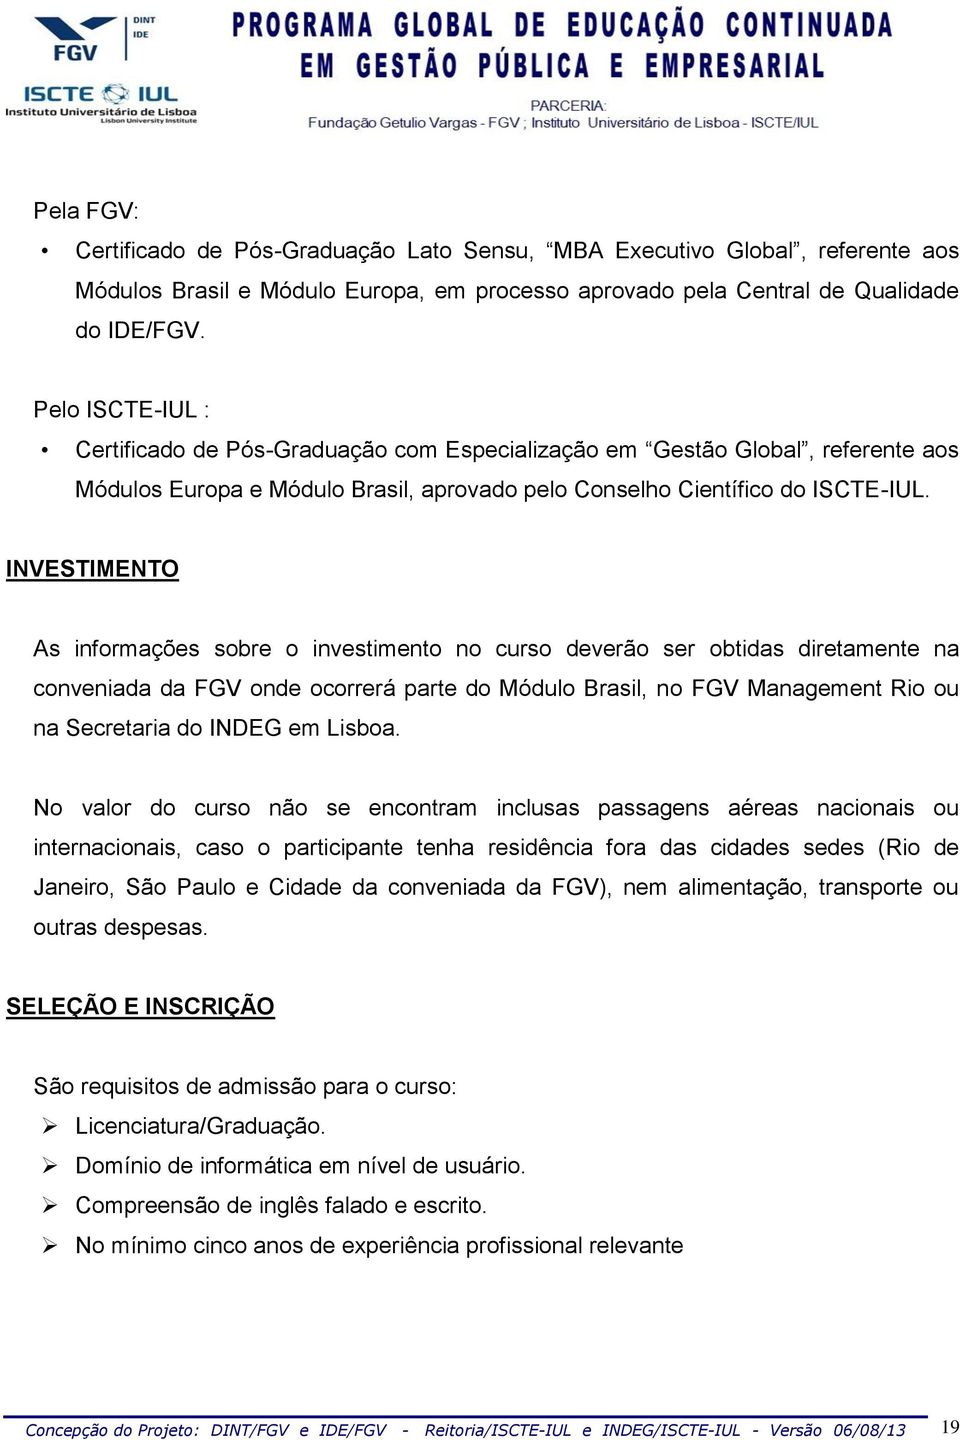 INVTIMNTO As informações sobre o investimento no curso deverão ser obtidas diretamente na conveniada da FGV onde ocorrerá parte do Módulo Brasil, no FGV Management Rio ou na ecretaria do INDG em